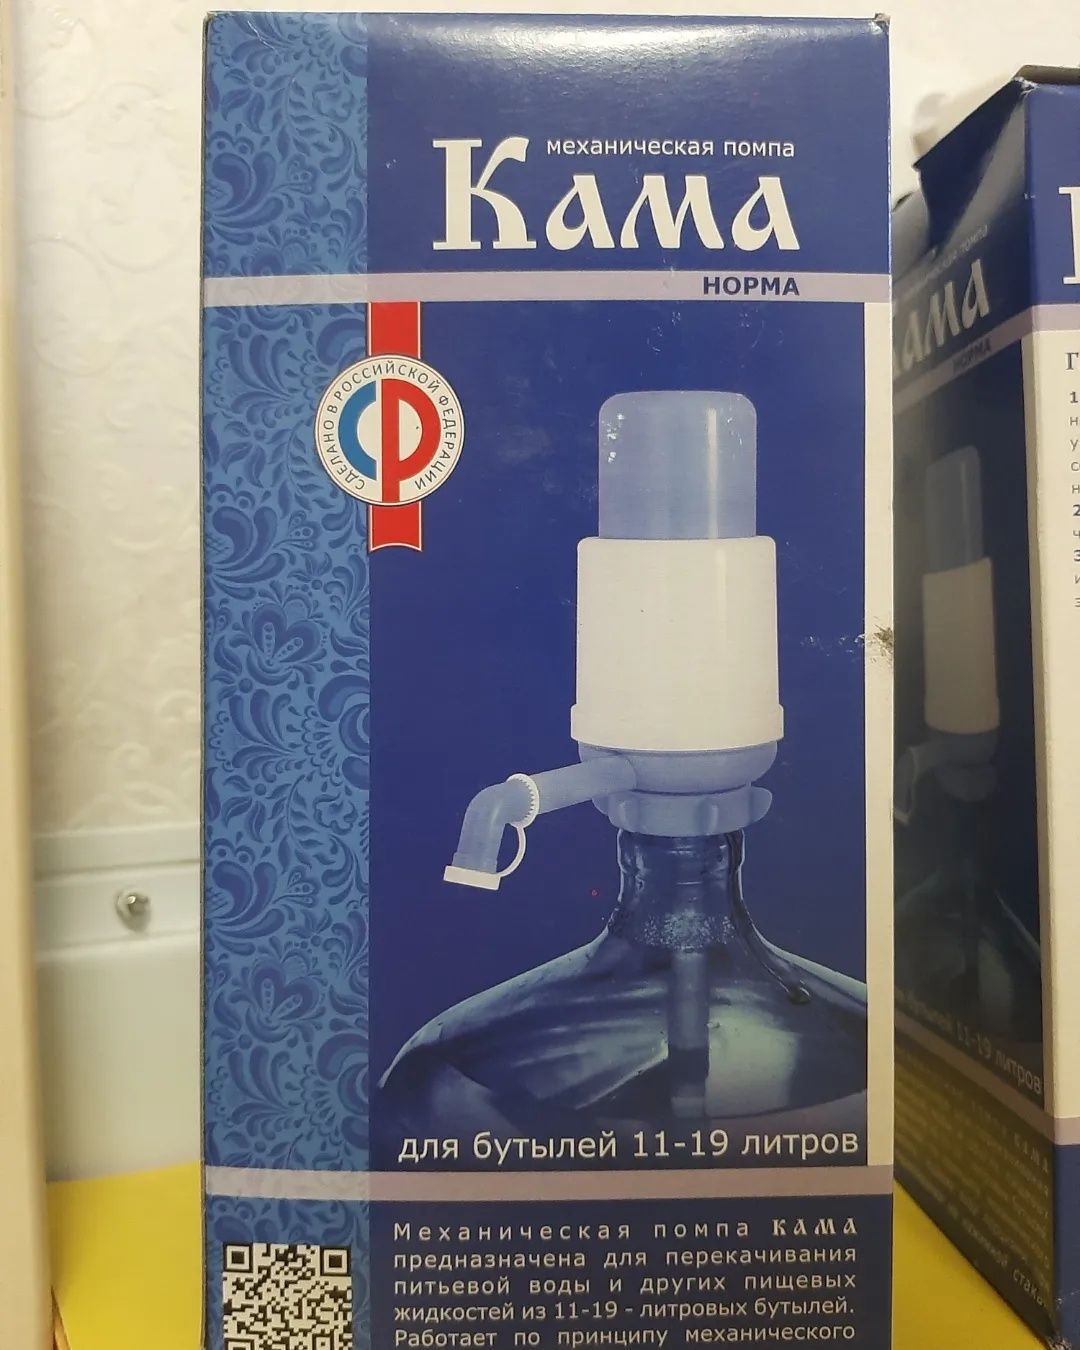 Для невестки механическая помпа для воды Кама Норма (Россия)